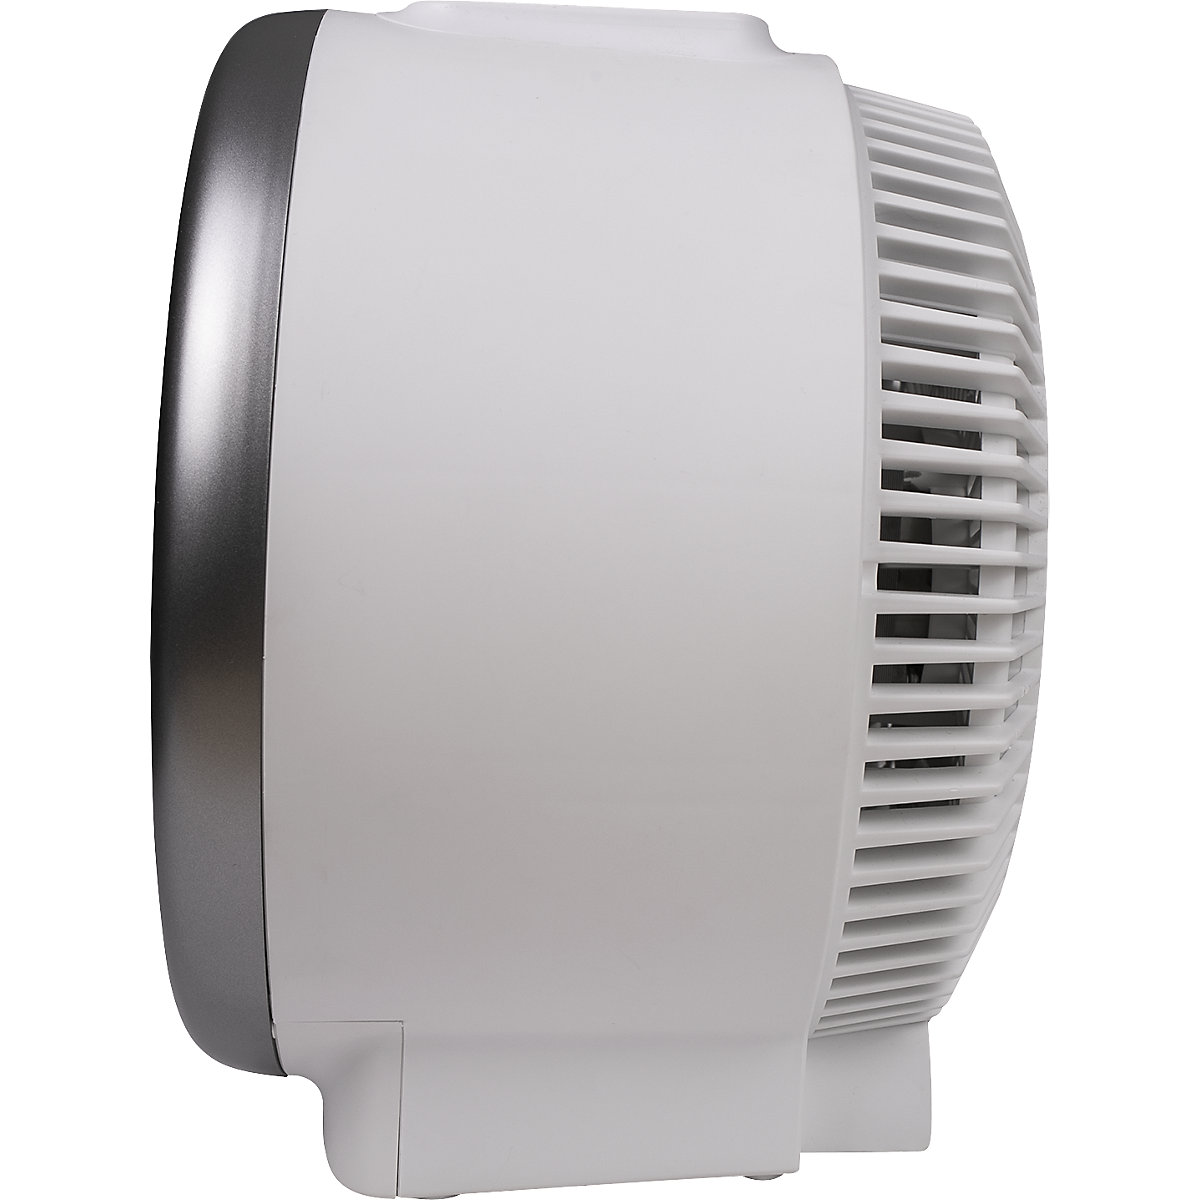 Ventilador calefactor HOT + COLD (Imagen del producto 7)-6